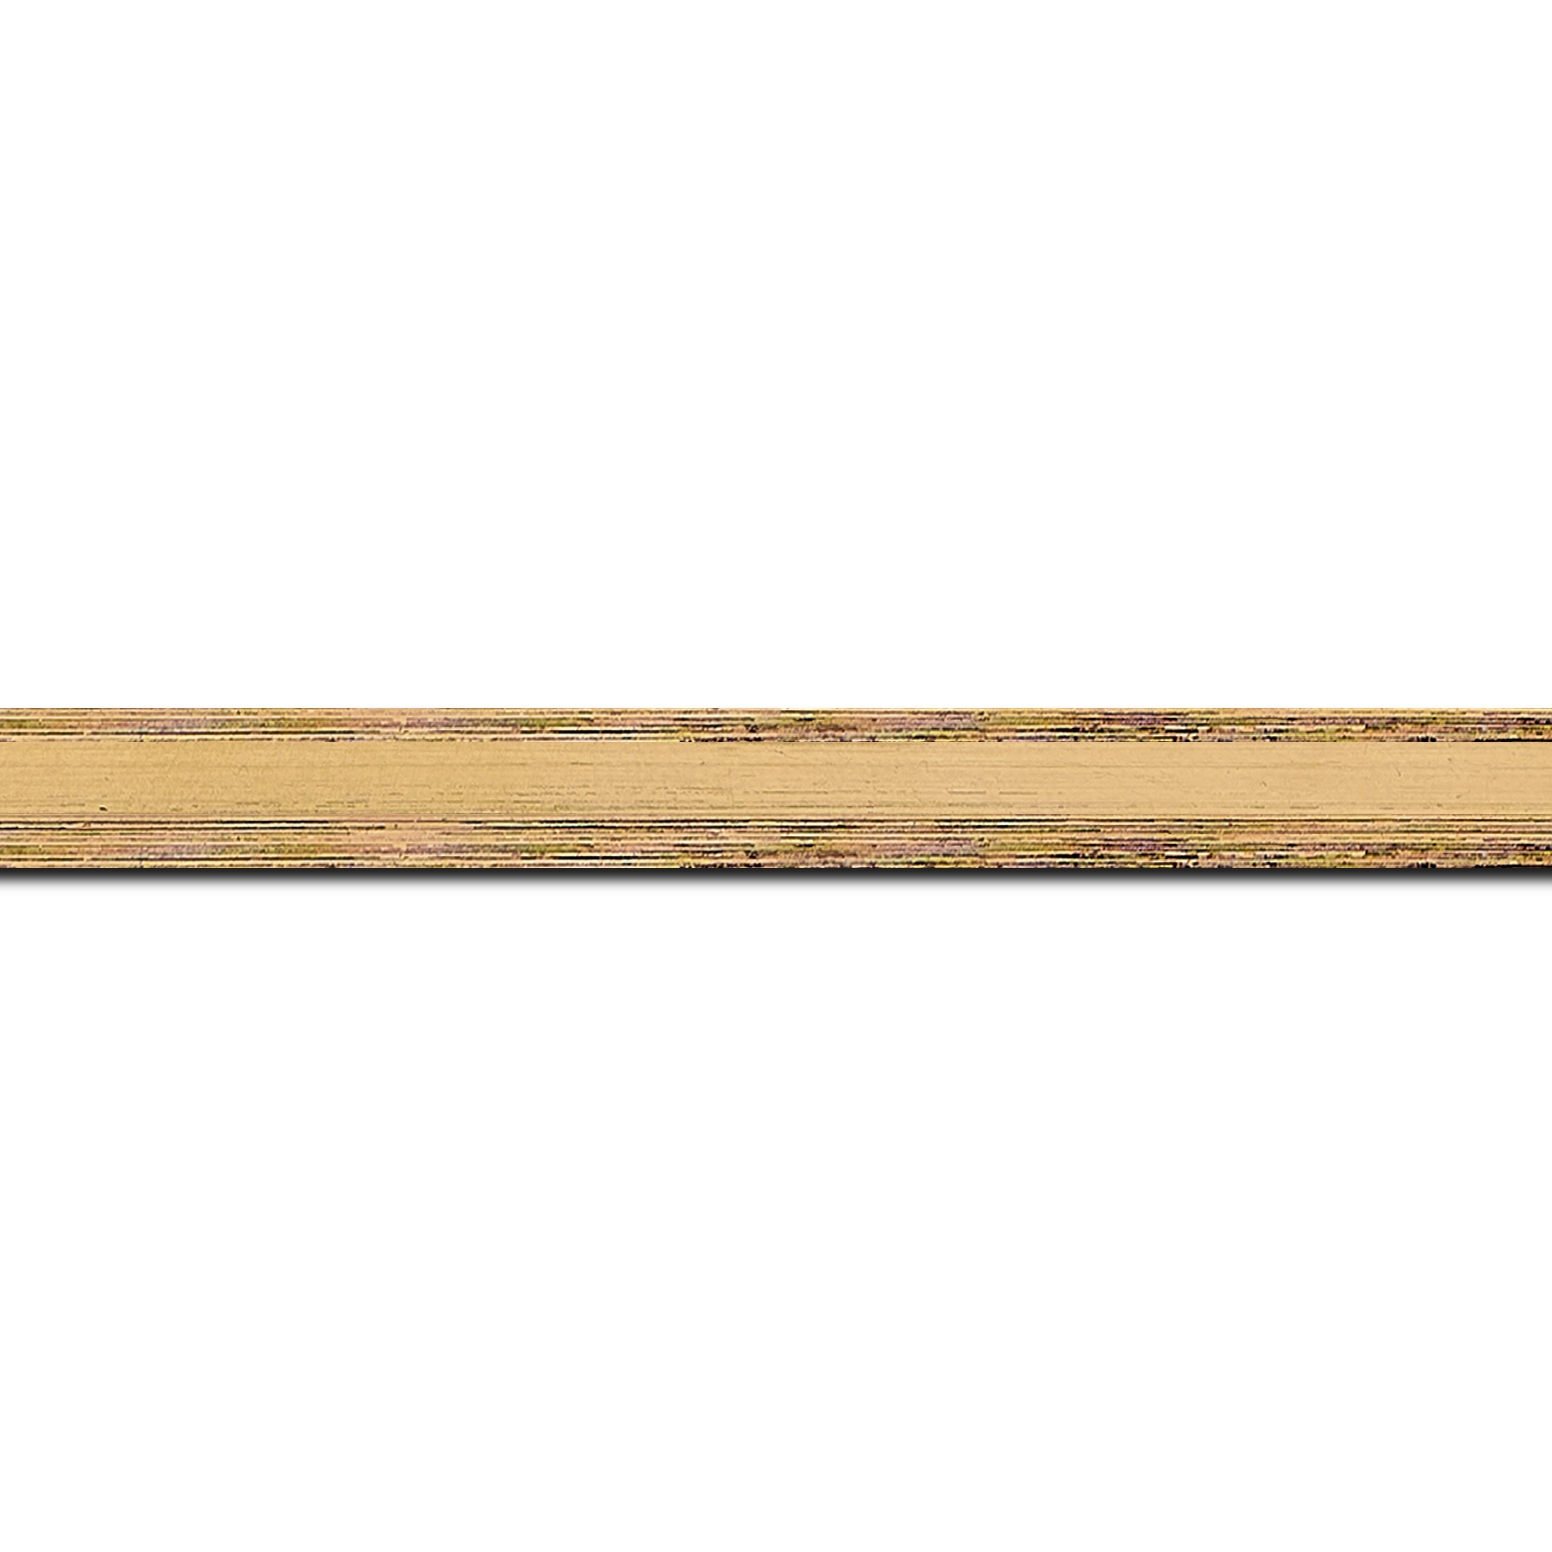 Baguette longueur 1.40m bois profil plat en pente largeur 1.4cm couleur or coté extérieur foncé. finition haut de gamme car dorure à l'eau fait main